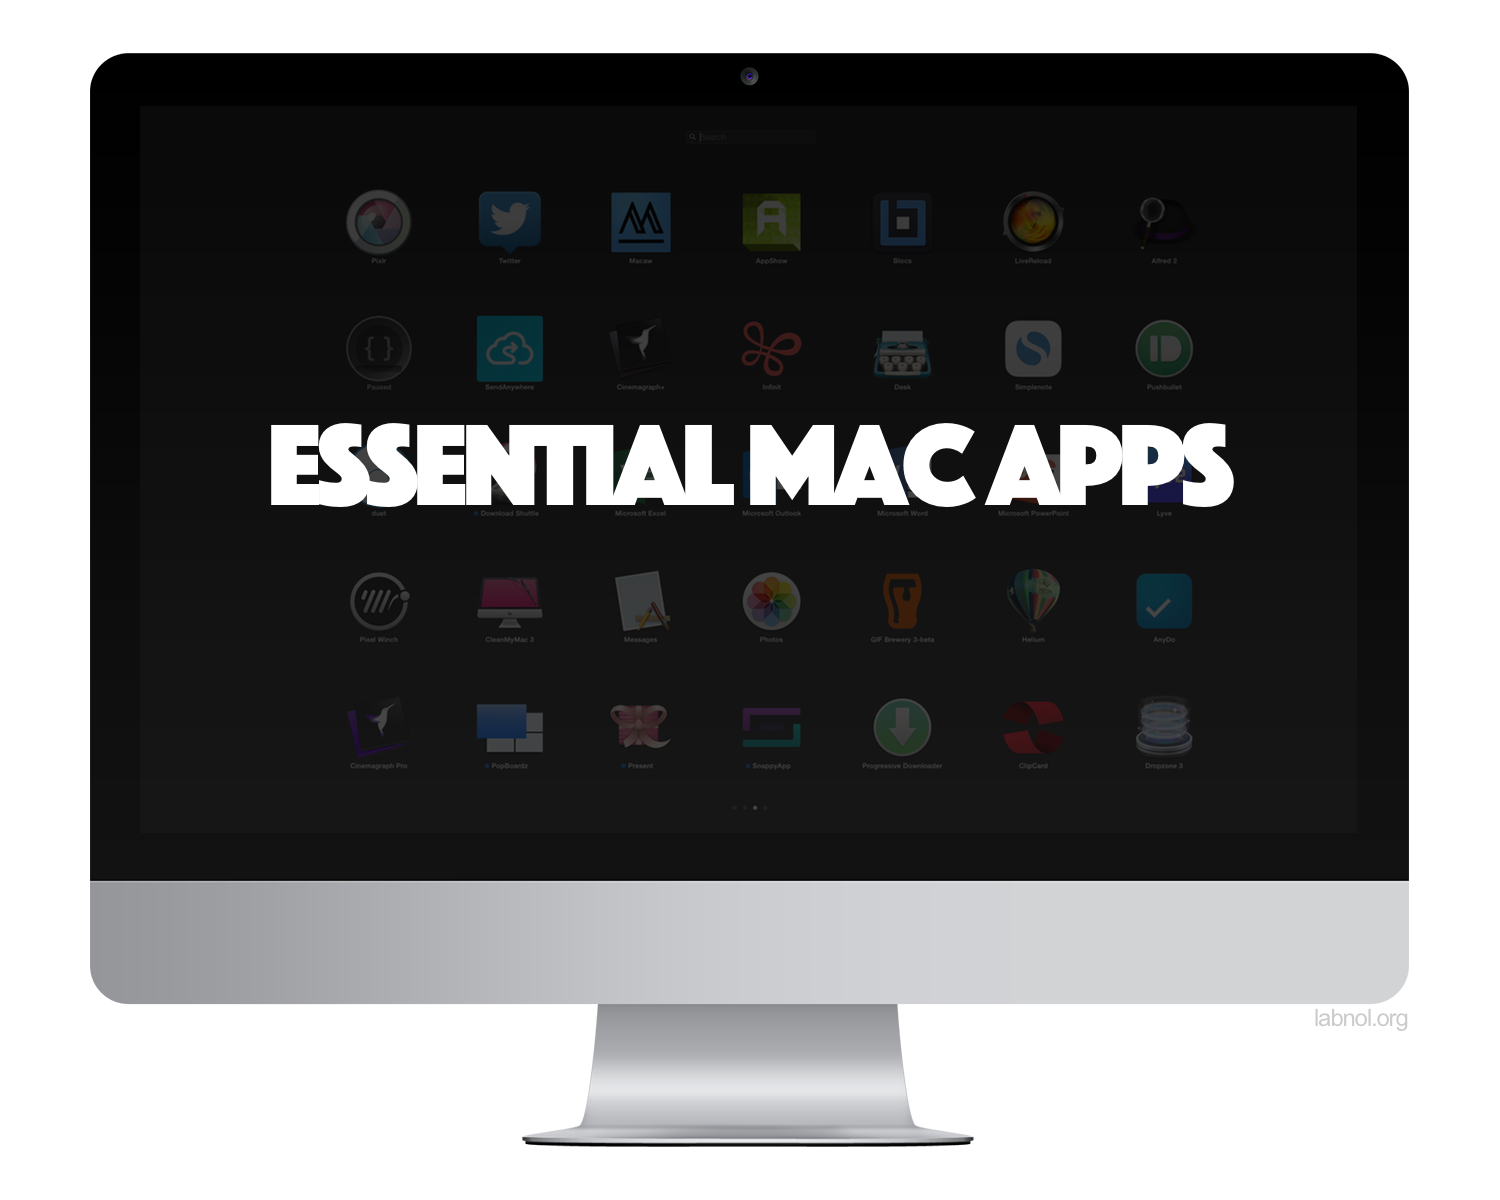 Fastlane for mac apps downloads